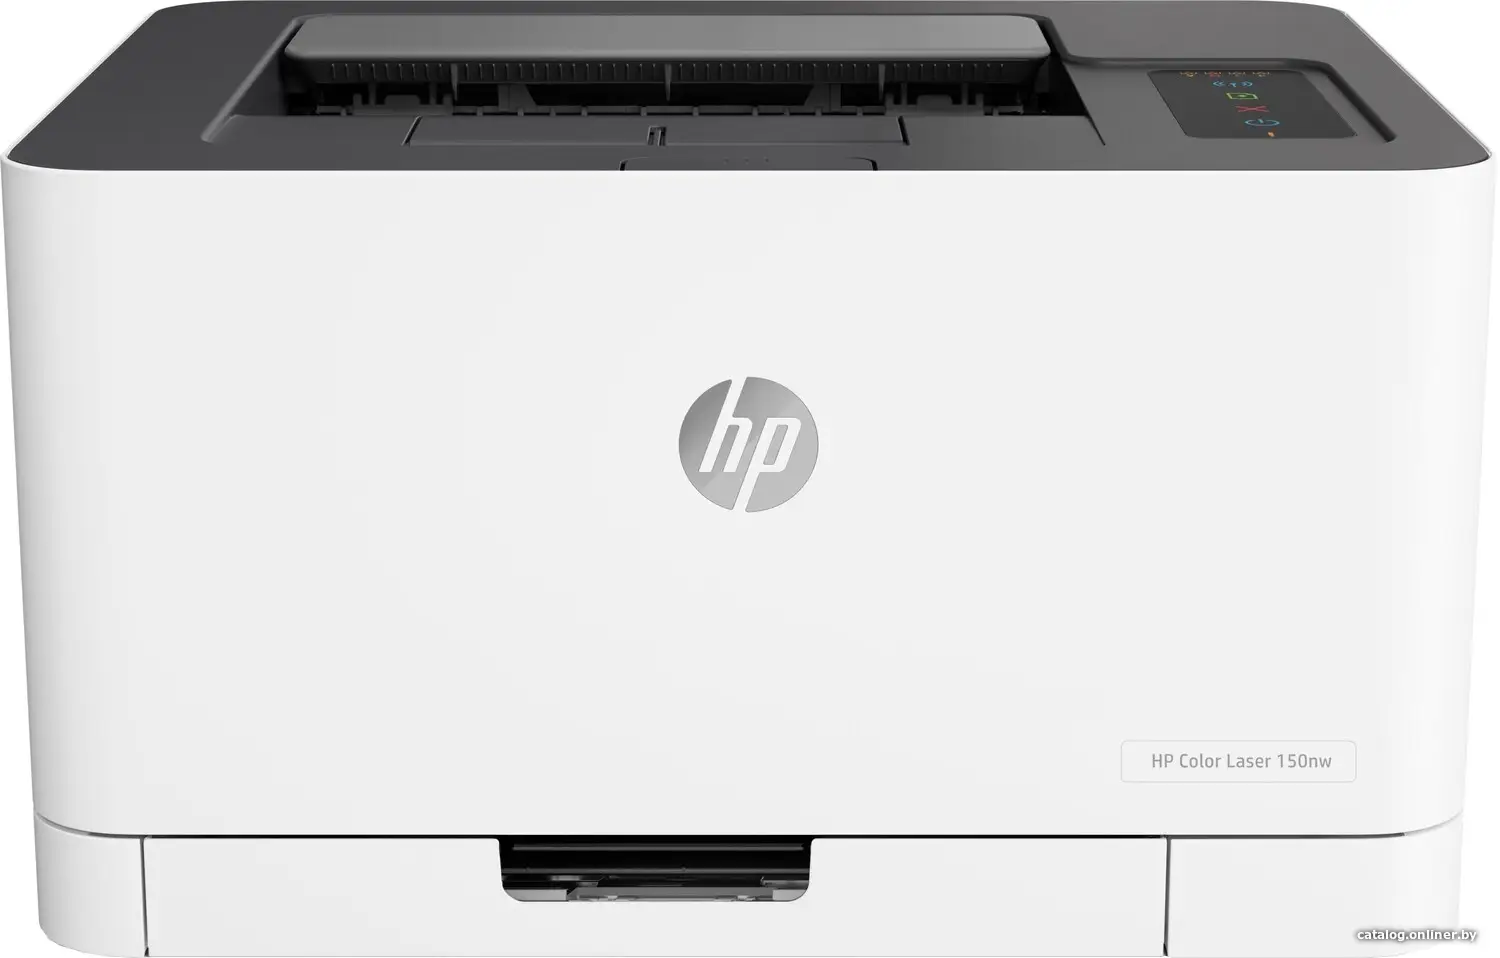 Купить Принтер HP Color LaserJet 150nw, цена, опт и розница